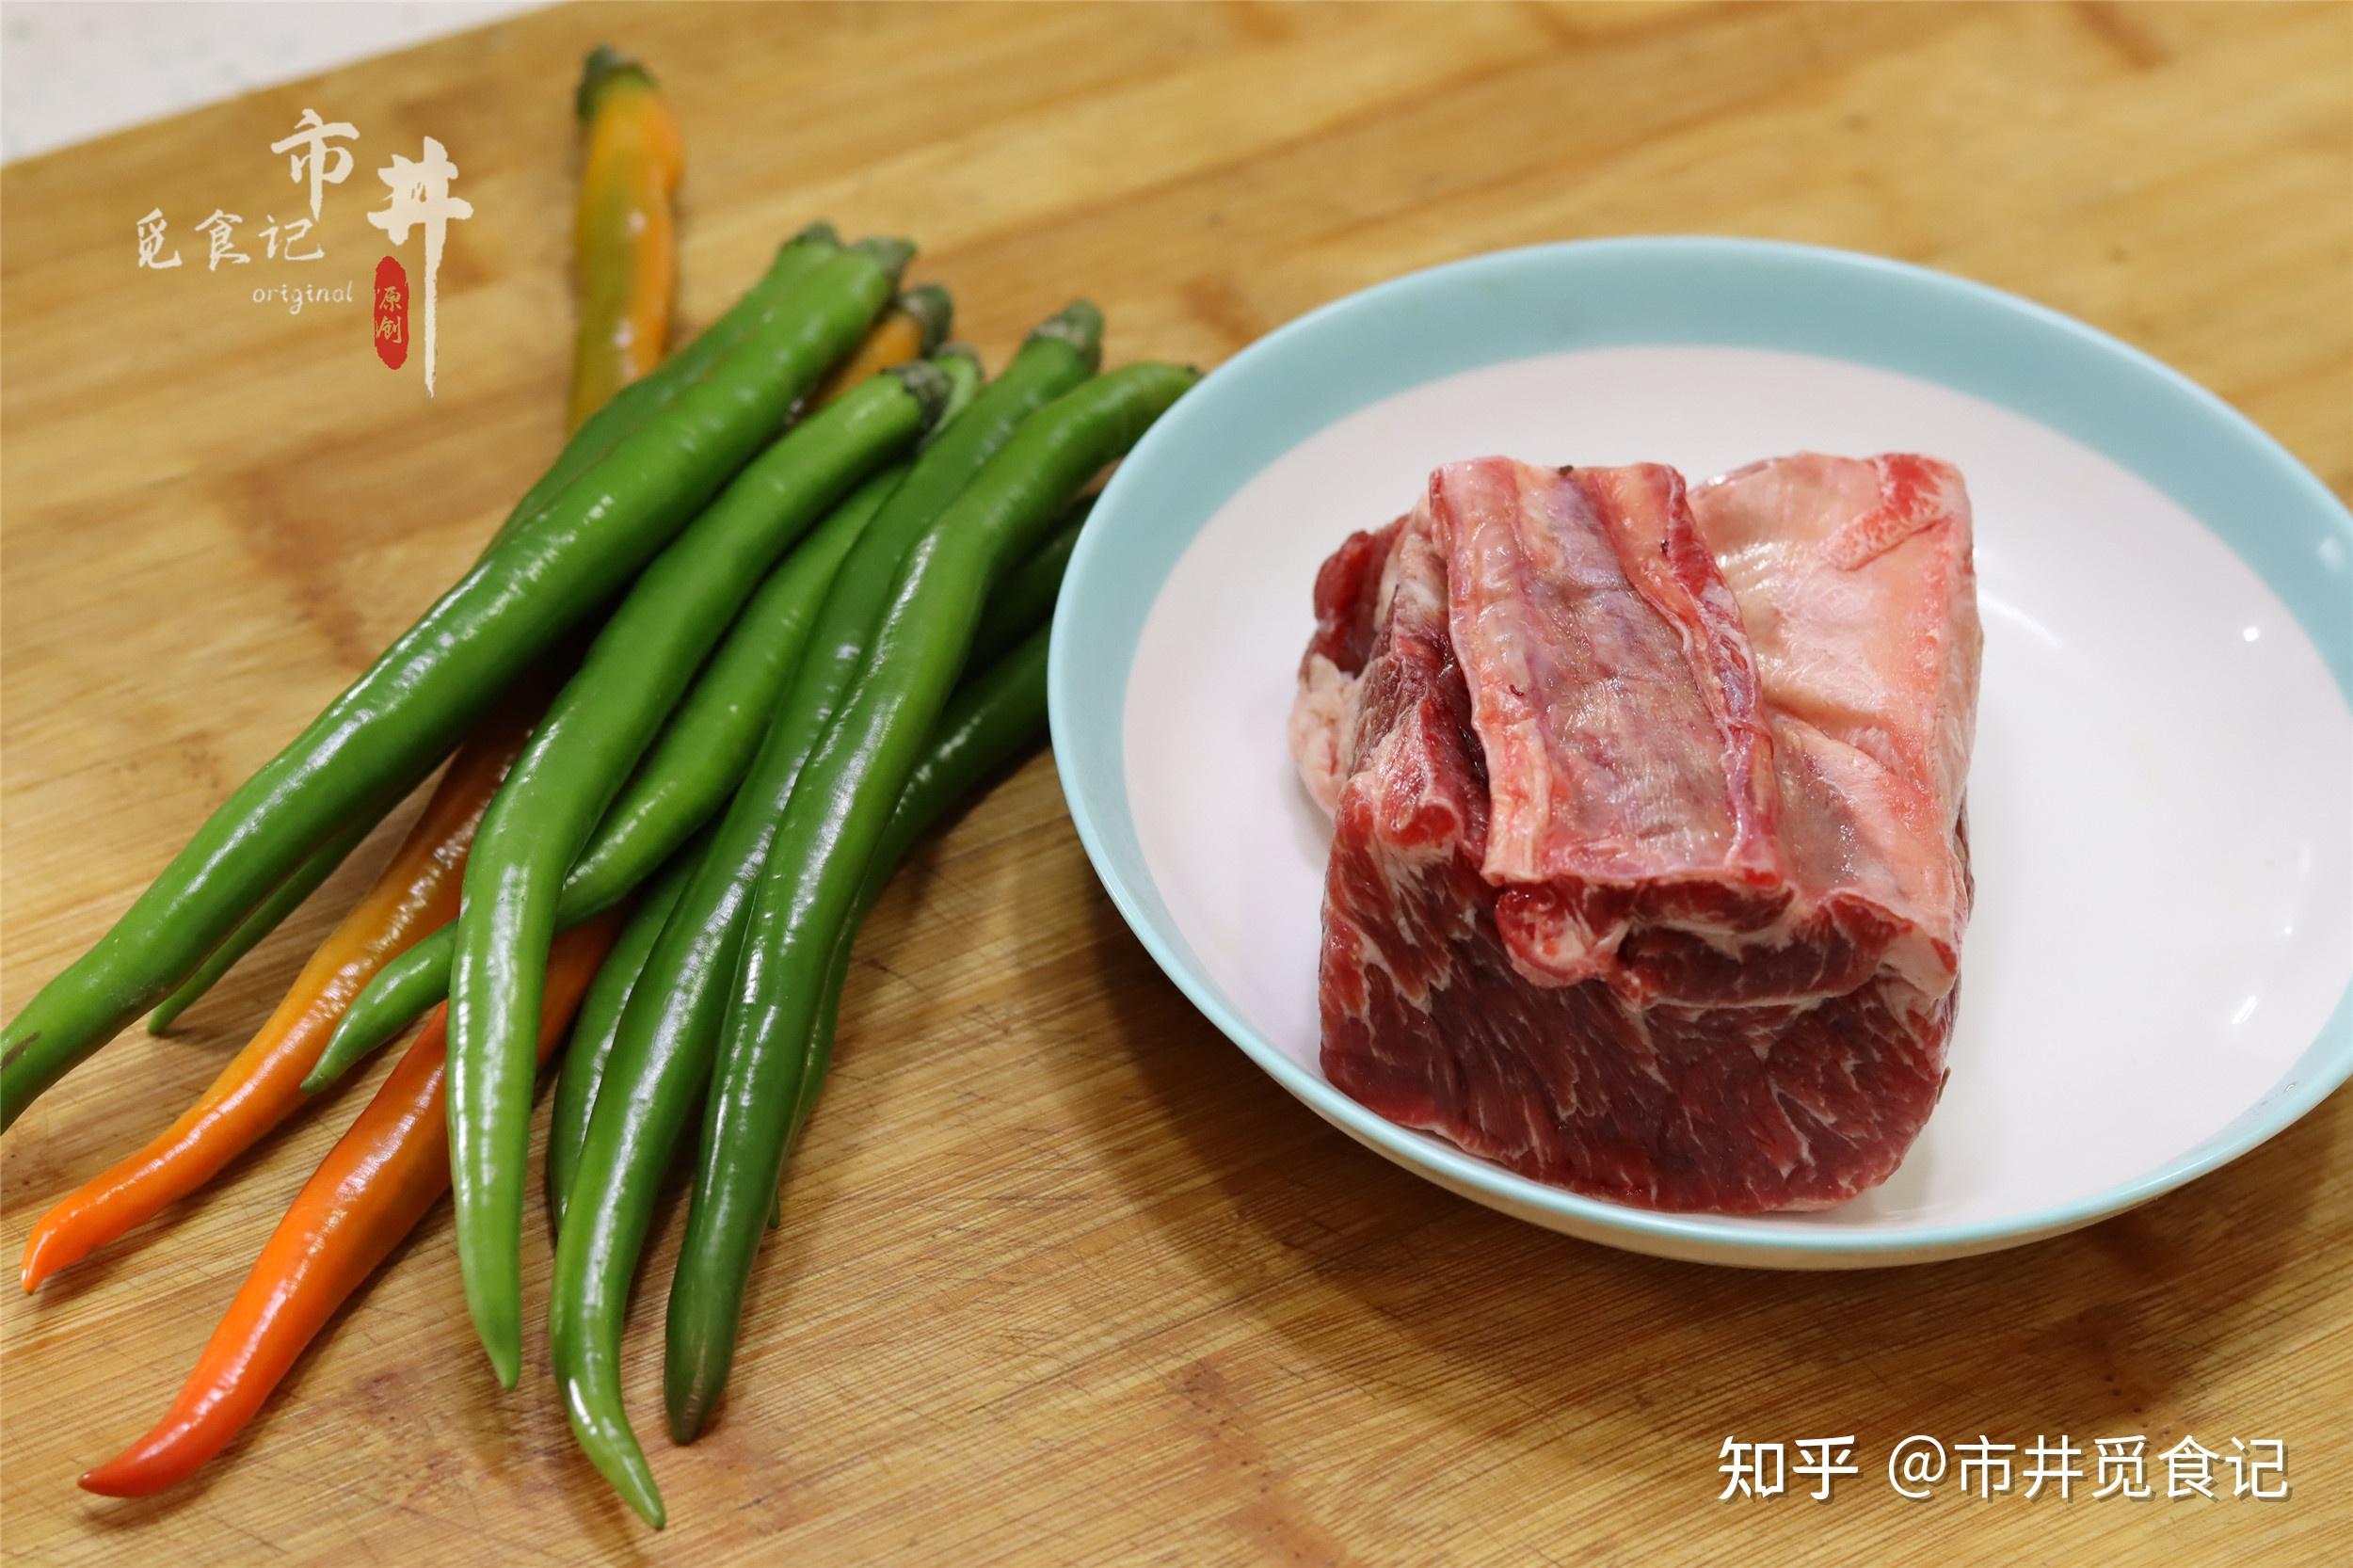 牛排 肉 牛肉 吃 食品 牛肉牛排 美味 主菜 午餐 营养图片下载 - 觅知网